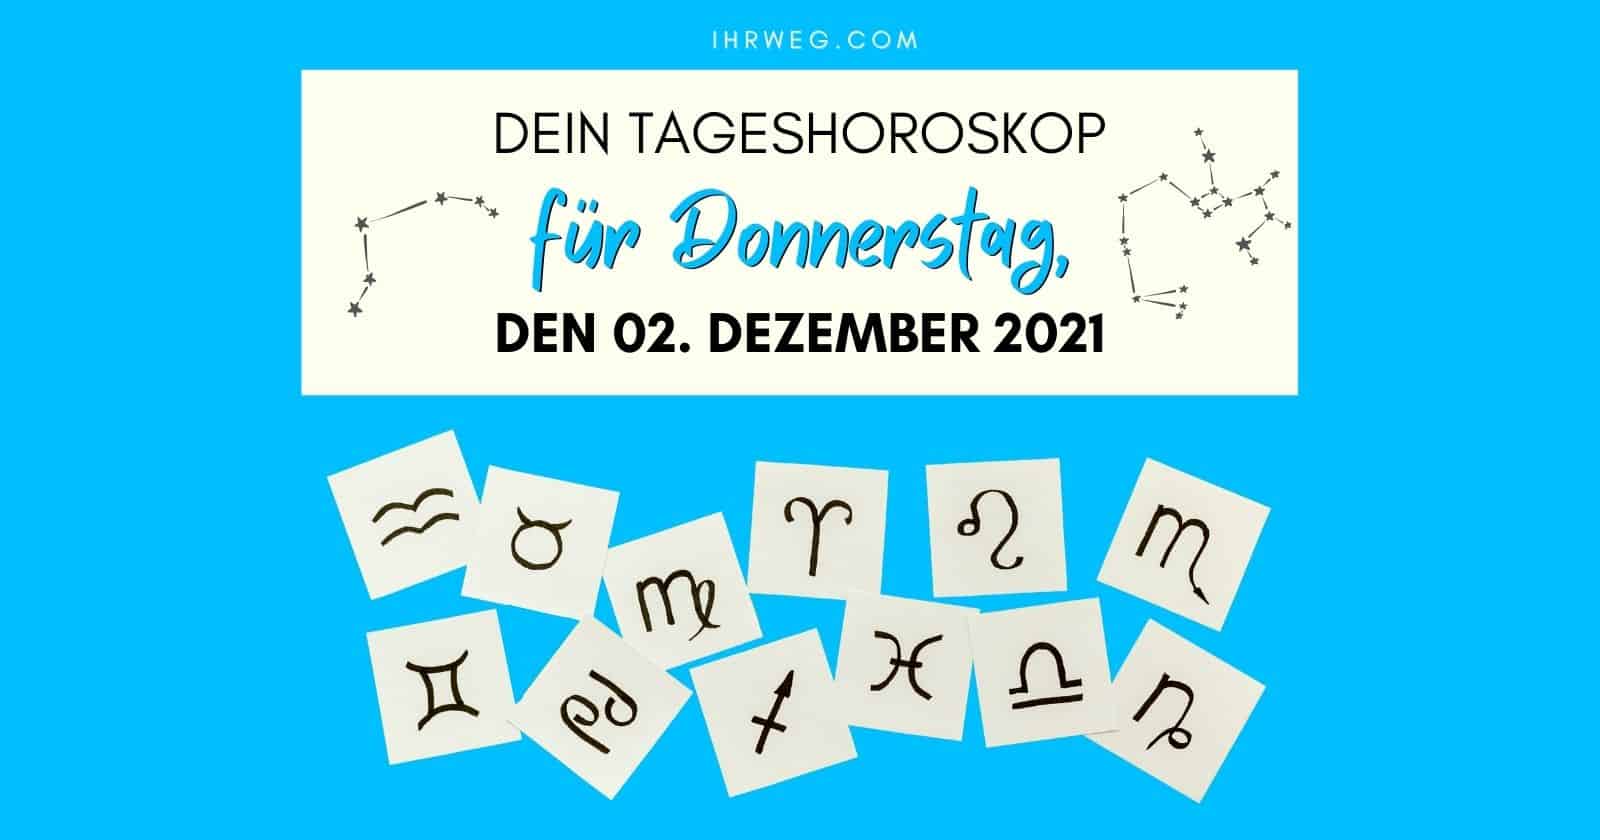 Horoskop heute: Dein Tageshoroskop für Donnerstag, den 2. Dezember 2021